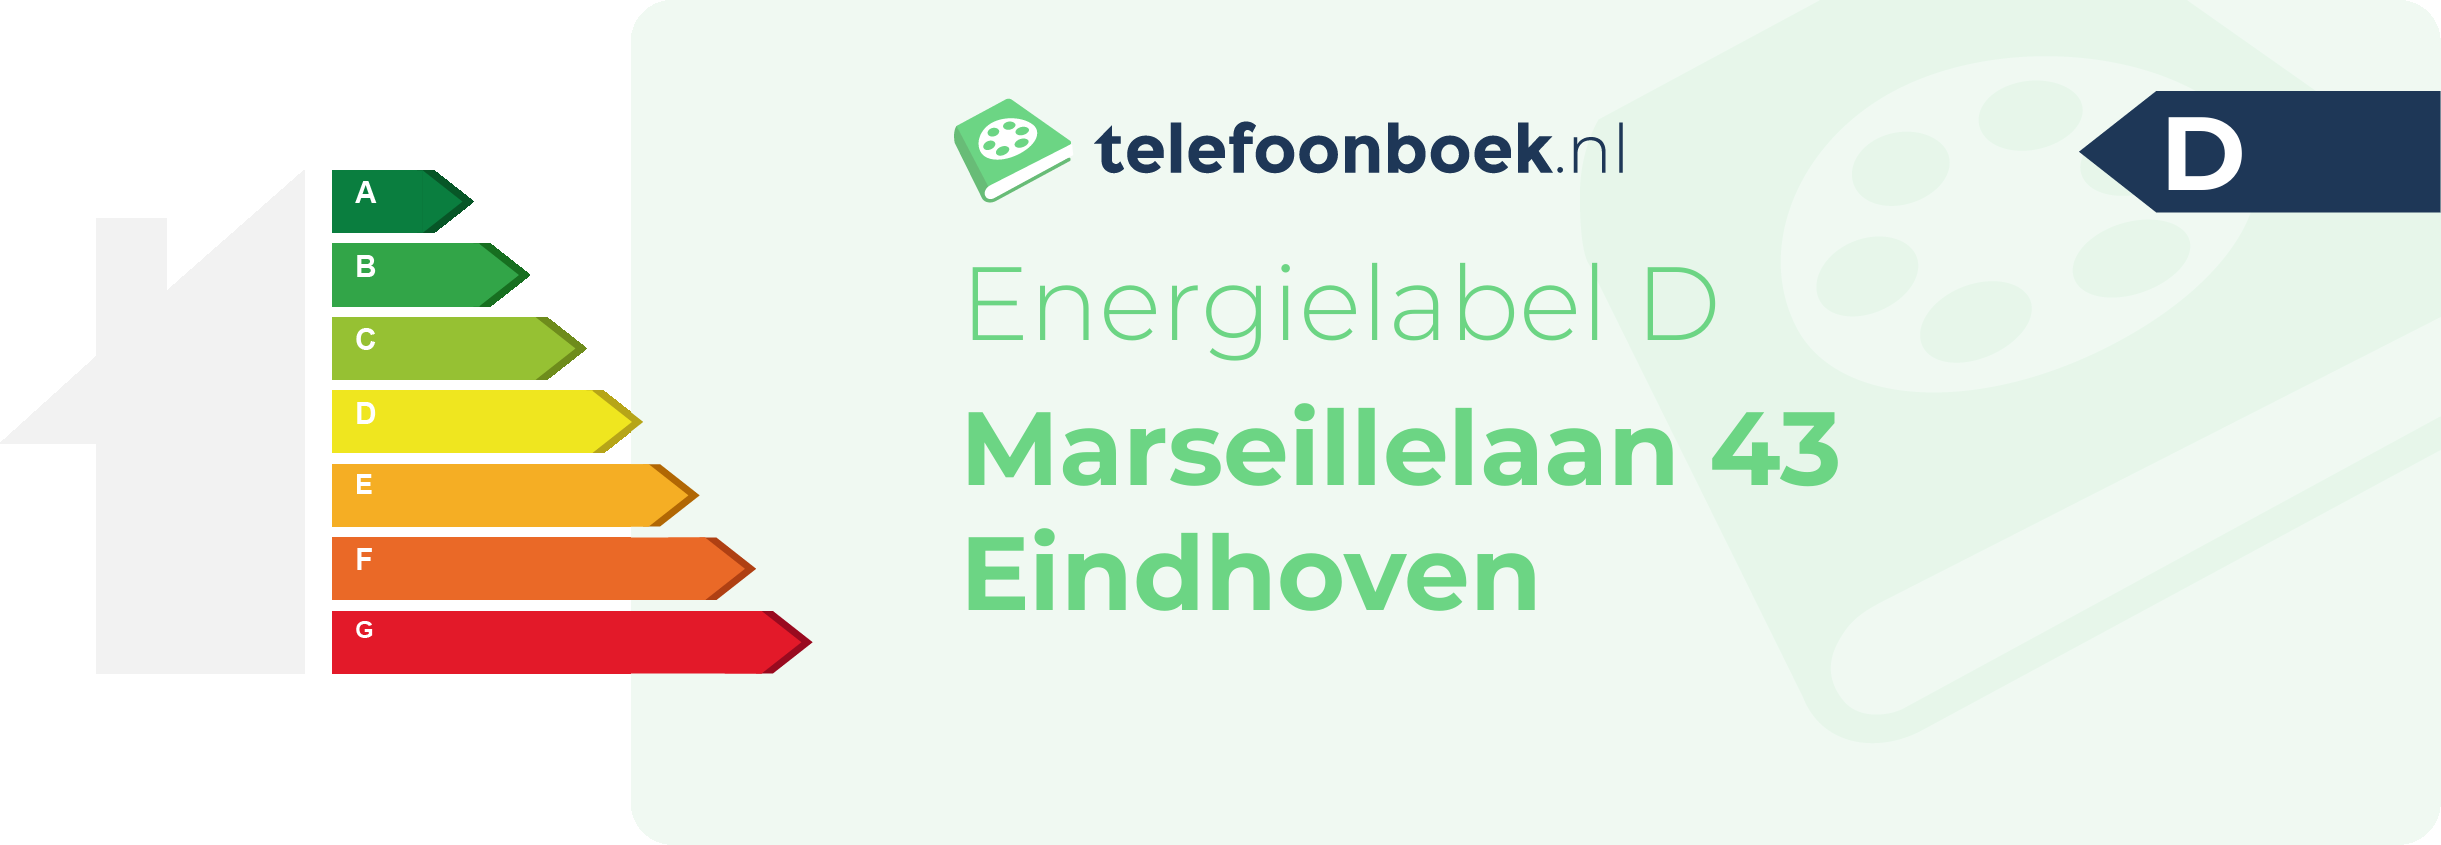 Energielabel Marseillelaan 43 Eindhoven